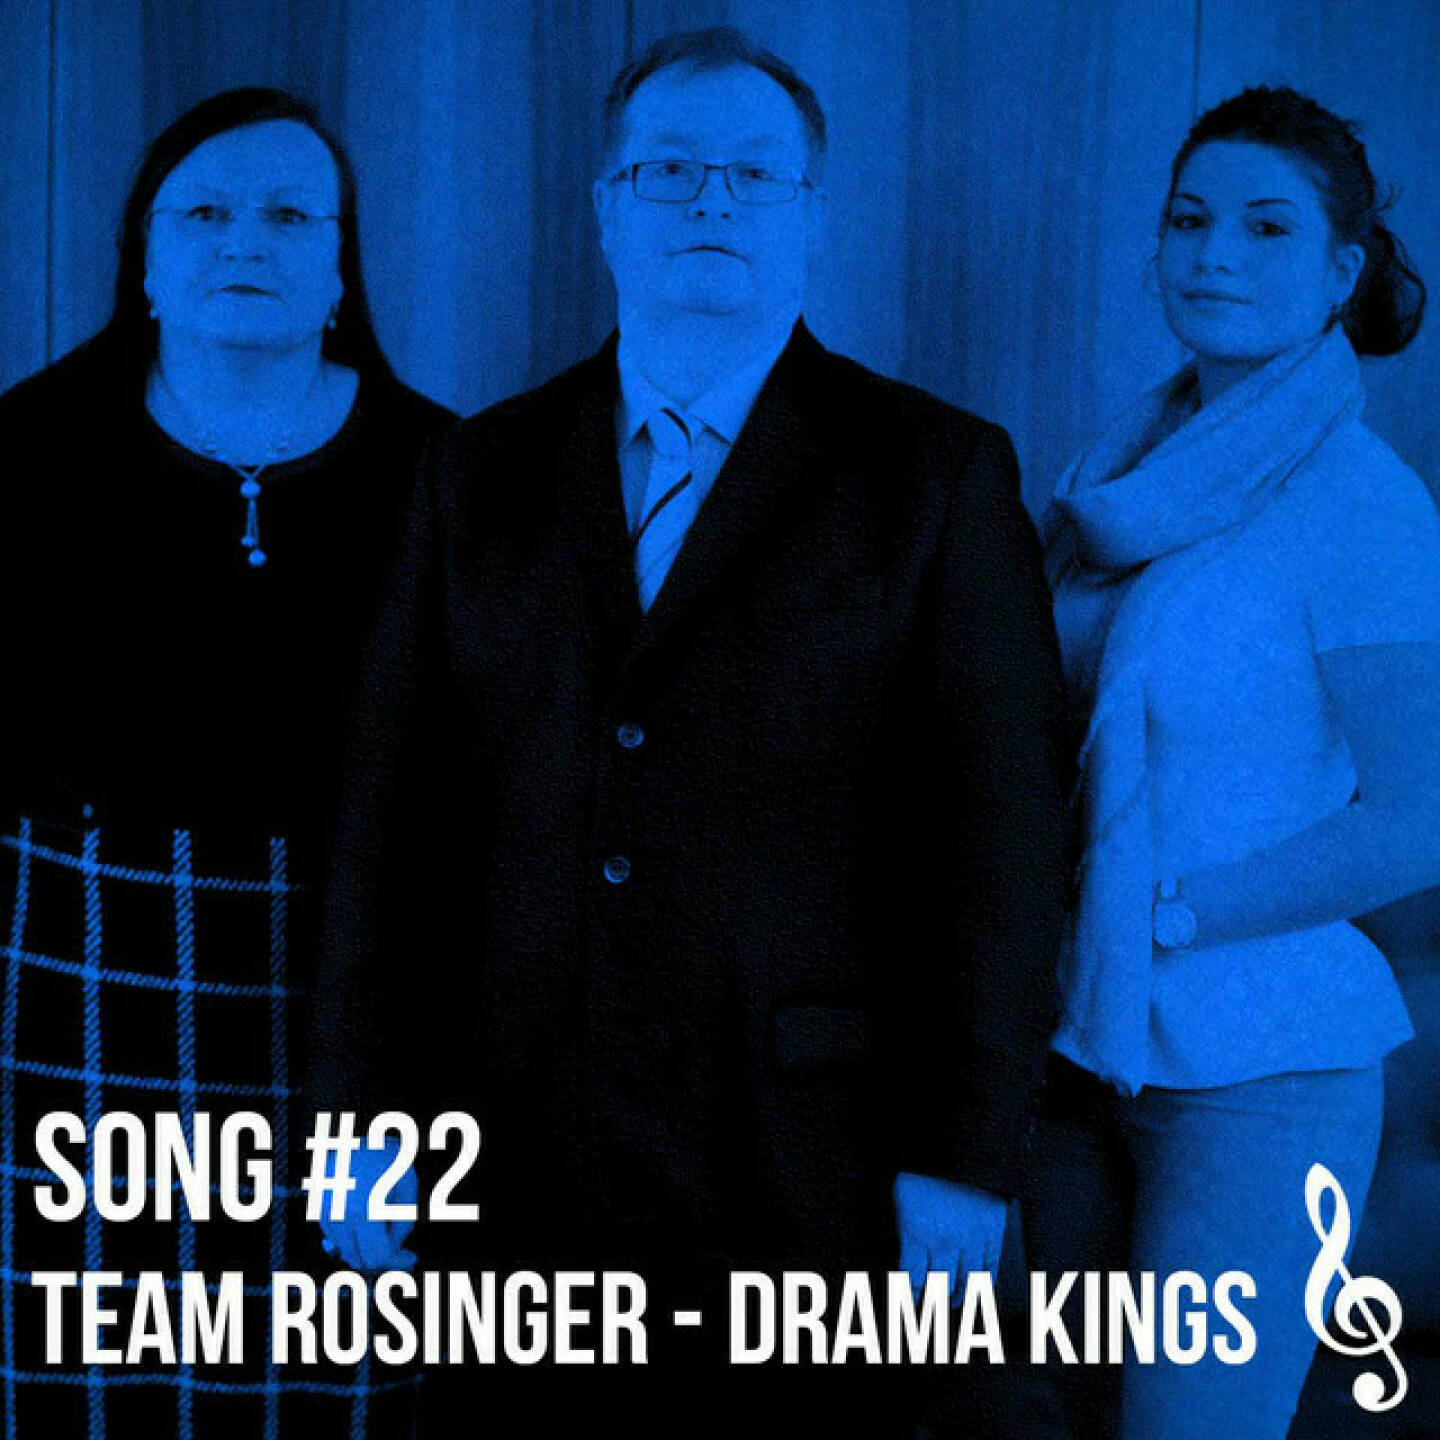 https://open.spotify.com/episode/1mE2CGMpVyzWmyfl3auaM4
Song #22: Team Rosinger - drama kings - <p>Die drama kings sind Christian Drastil (dra) und Michael Marek (ma), die aus „hey, team drajc“, also Song #19 in diesem Podcast) für die Rosinger Group einen Rosinger-Cut gefertigt haben, dies mit alternativen Lyrics und addierten Samples von Gregor Rosinger. Ergebnis: „Team Rosinger“.</p><br/><p>Lyrics „Team Rosinger“</p><br/><p>(Samples Gregor Rosinger, Christoph Boschan aus boersenradio.at)</p><br/><p>Es war um 1780 und es war in Wien (exakt 9 Jahre früher gründete die Kaiserin)<br/>eine Stock Exchange mit Pomp und Trara<br/>(doch der Christoph Boschan, der war noch nicht da)<br/>Ma-ma-ma-ma Matejka und Brezinschek <br/>(die Umsätze zur Kaiserzeit waren wirklch ka Dreck)</p><br/><p>.. und so läutete später der Ferdinand<br/>Le Mans Lenkrad in der Habsburger Hand<br/>auch die Opening Bell zum 250er<br/>wir waren immer immer immer immer immer immer immer da</p><br/><p>Hey, Team Rosinger, <br/>Prepares you for Equity Star<br/>Hey, Team Zeitgeist ja<br/>Ein Modethema, Modethema, Modethema …..<br/>Gre - gor und Alexandra<br/>sind für Dein Listing da<br/>Rosgix ist Zeitgeist ja<br/>(Boschan Sample)</p><br/><p>Wir listen stocks for Equity <br/>listen stocks for equity, weil Kredite kriegst nie<br/>A message to Stephie in the mailbox to see<br/>das hatscht ja unglaublich, Du Englisch-Genie<br/>Vienna will go bullish, wie der Gusi einst sagte <br/>Alles Spekulanten, wie der Faymann Werner klagte </p><br/><p>Der Lehman Crash und der Covid Virus<br/>brochten Riesenstress und an bledn Verdruss<br/>doch wer unten gebuyt hat. konnte high sellen<br/>trotz Wertpapier-KESt und Frau Janet Yellen</p><br/><p>Hey, Team Rosinger, <br/>Prepares you for Equity Star<br/>Hey, Team Zeitgeist ja<br/>Ein Modethema, Modethema, Modethema …..<br/>Gre - gor und Alexandra<br/>sind für Dein Listing da<br/>Rosgix ist Zeitgeist ja<br/>(Boschan Sample)</p><br/><p>They called him the wild Rosinger<br/>wir hoffen, Nick Cave klogt des ned<br/>his Rosgix has very good closinger<br/>auch fürn direct market is ned bled </p><br/><p>Hey, Team Rosinger, <br/>Prepares you for Equity Star<br/>Hey, Team Zeitgeist ja<br/>Ein Modethema, Modethema, Modethema …..<br/>Gre - gor und Alexandra<br/>sind für Dein Listing da<br/>Rosgix ist Zeitgeist ja<br/>(Rosinger Sample)</p><br/><p>Podcasting for Equity … Podcasting for Equity</p><br/><p>(Samples Gregor Rosinger)</p><br/><p>2022 Christian Drastil - drama kings, Mixed by Michael Marek</p>